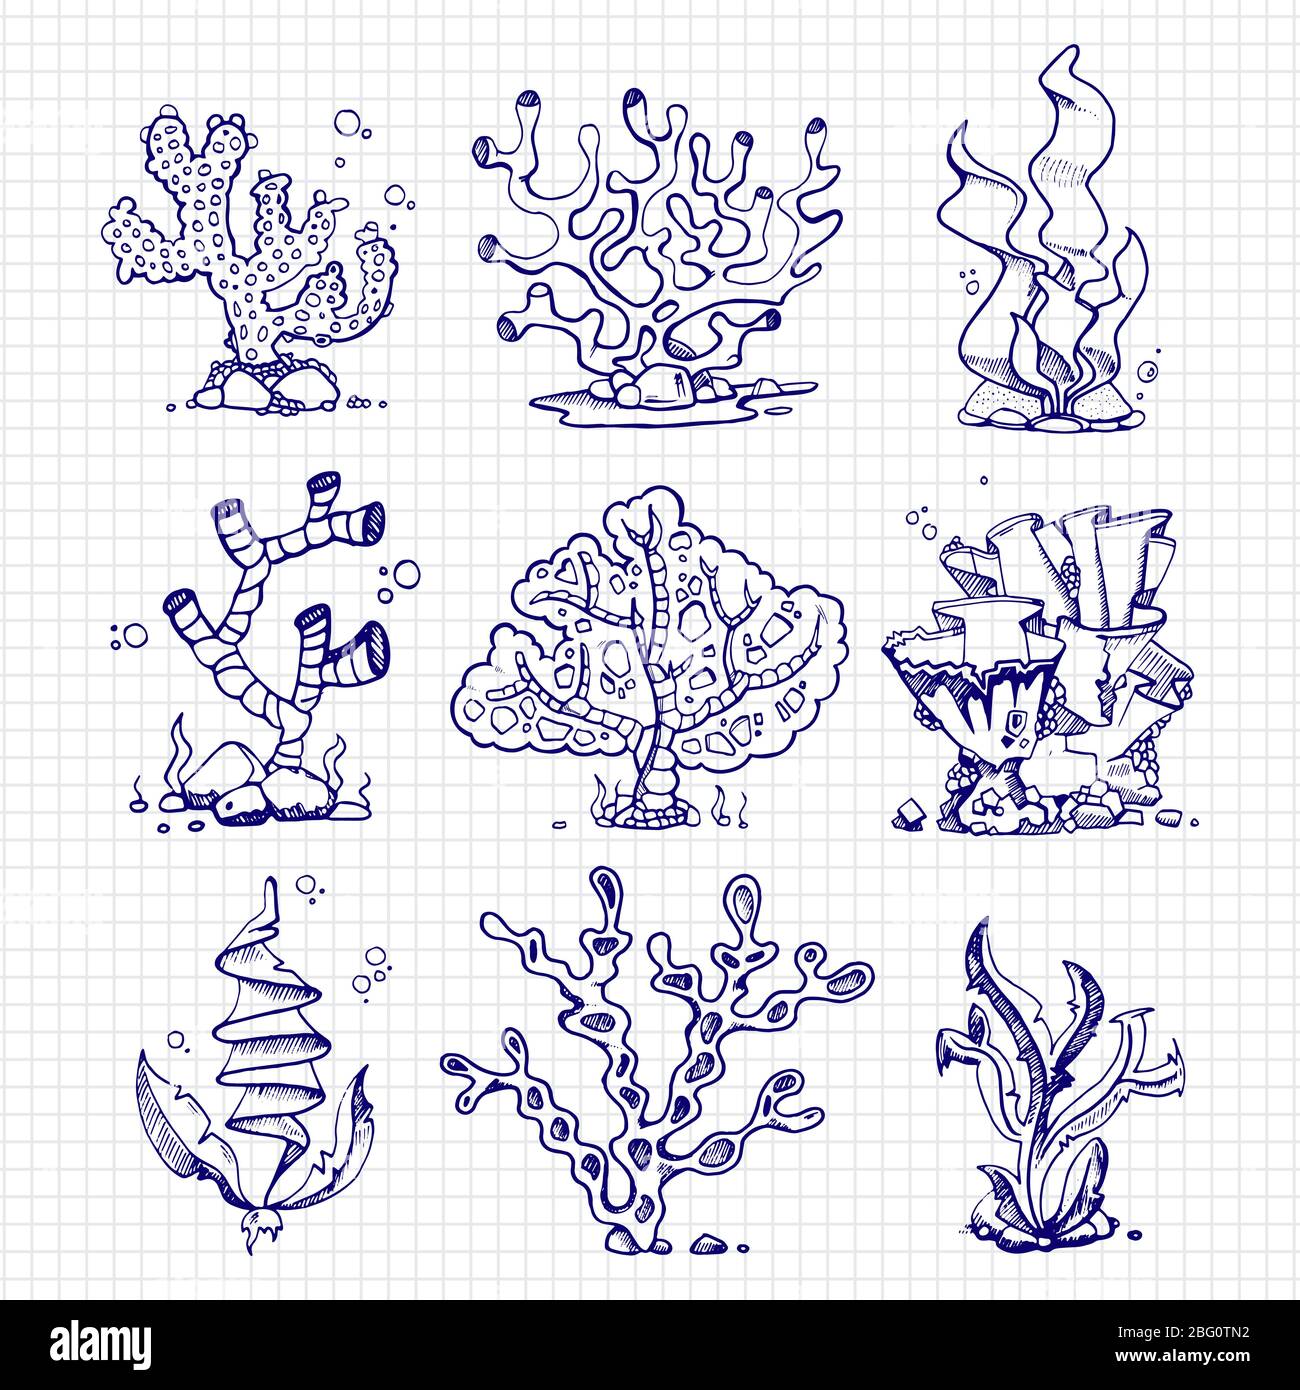 Stylo bille qui dessine des algues, des coraux, des plantes sous-marines sur la page du bloc-notes. Illustration vectorielle Illustration de Vecteur